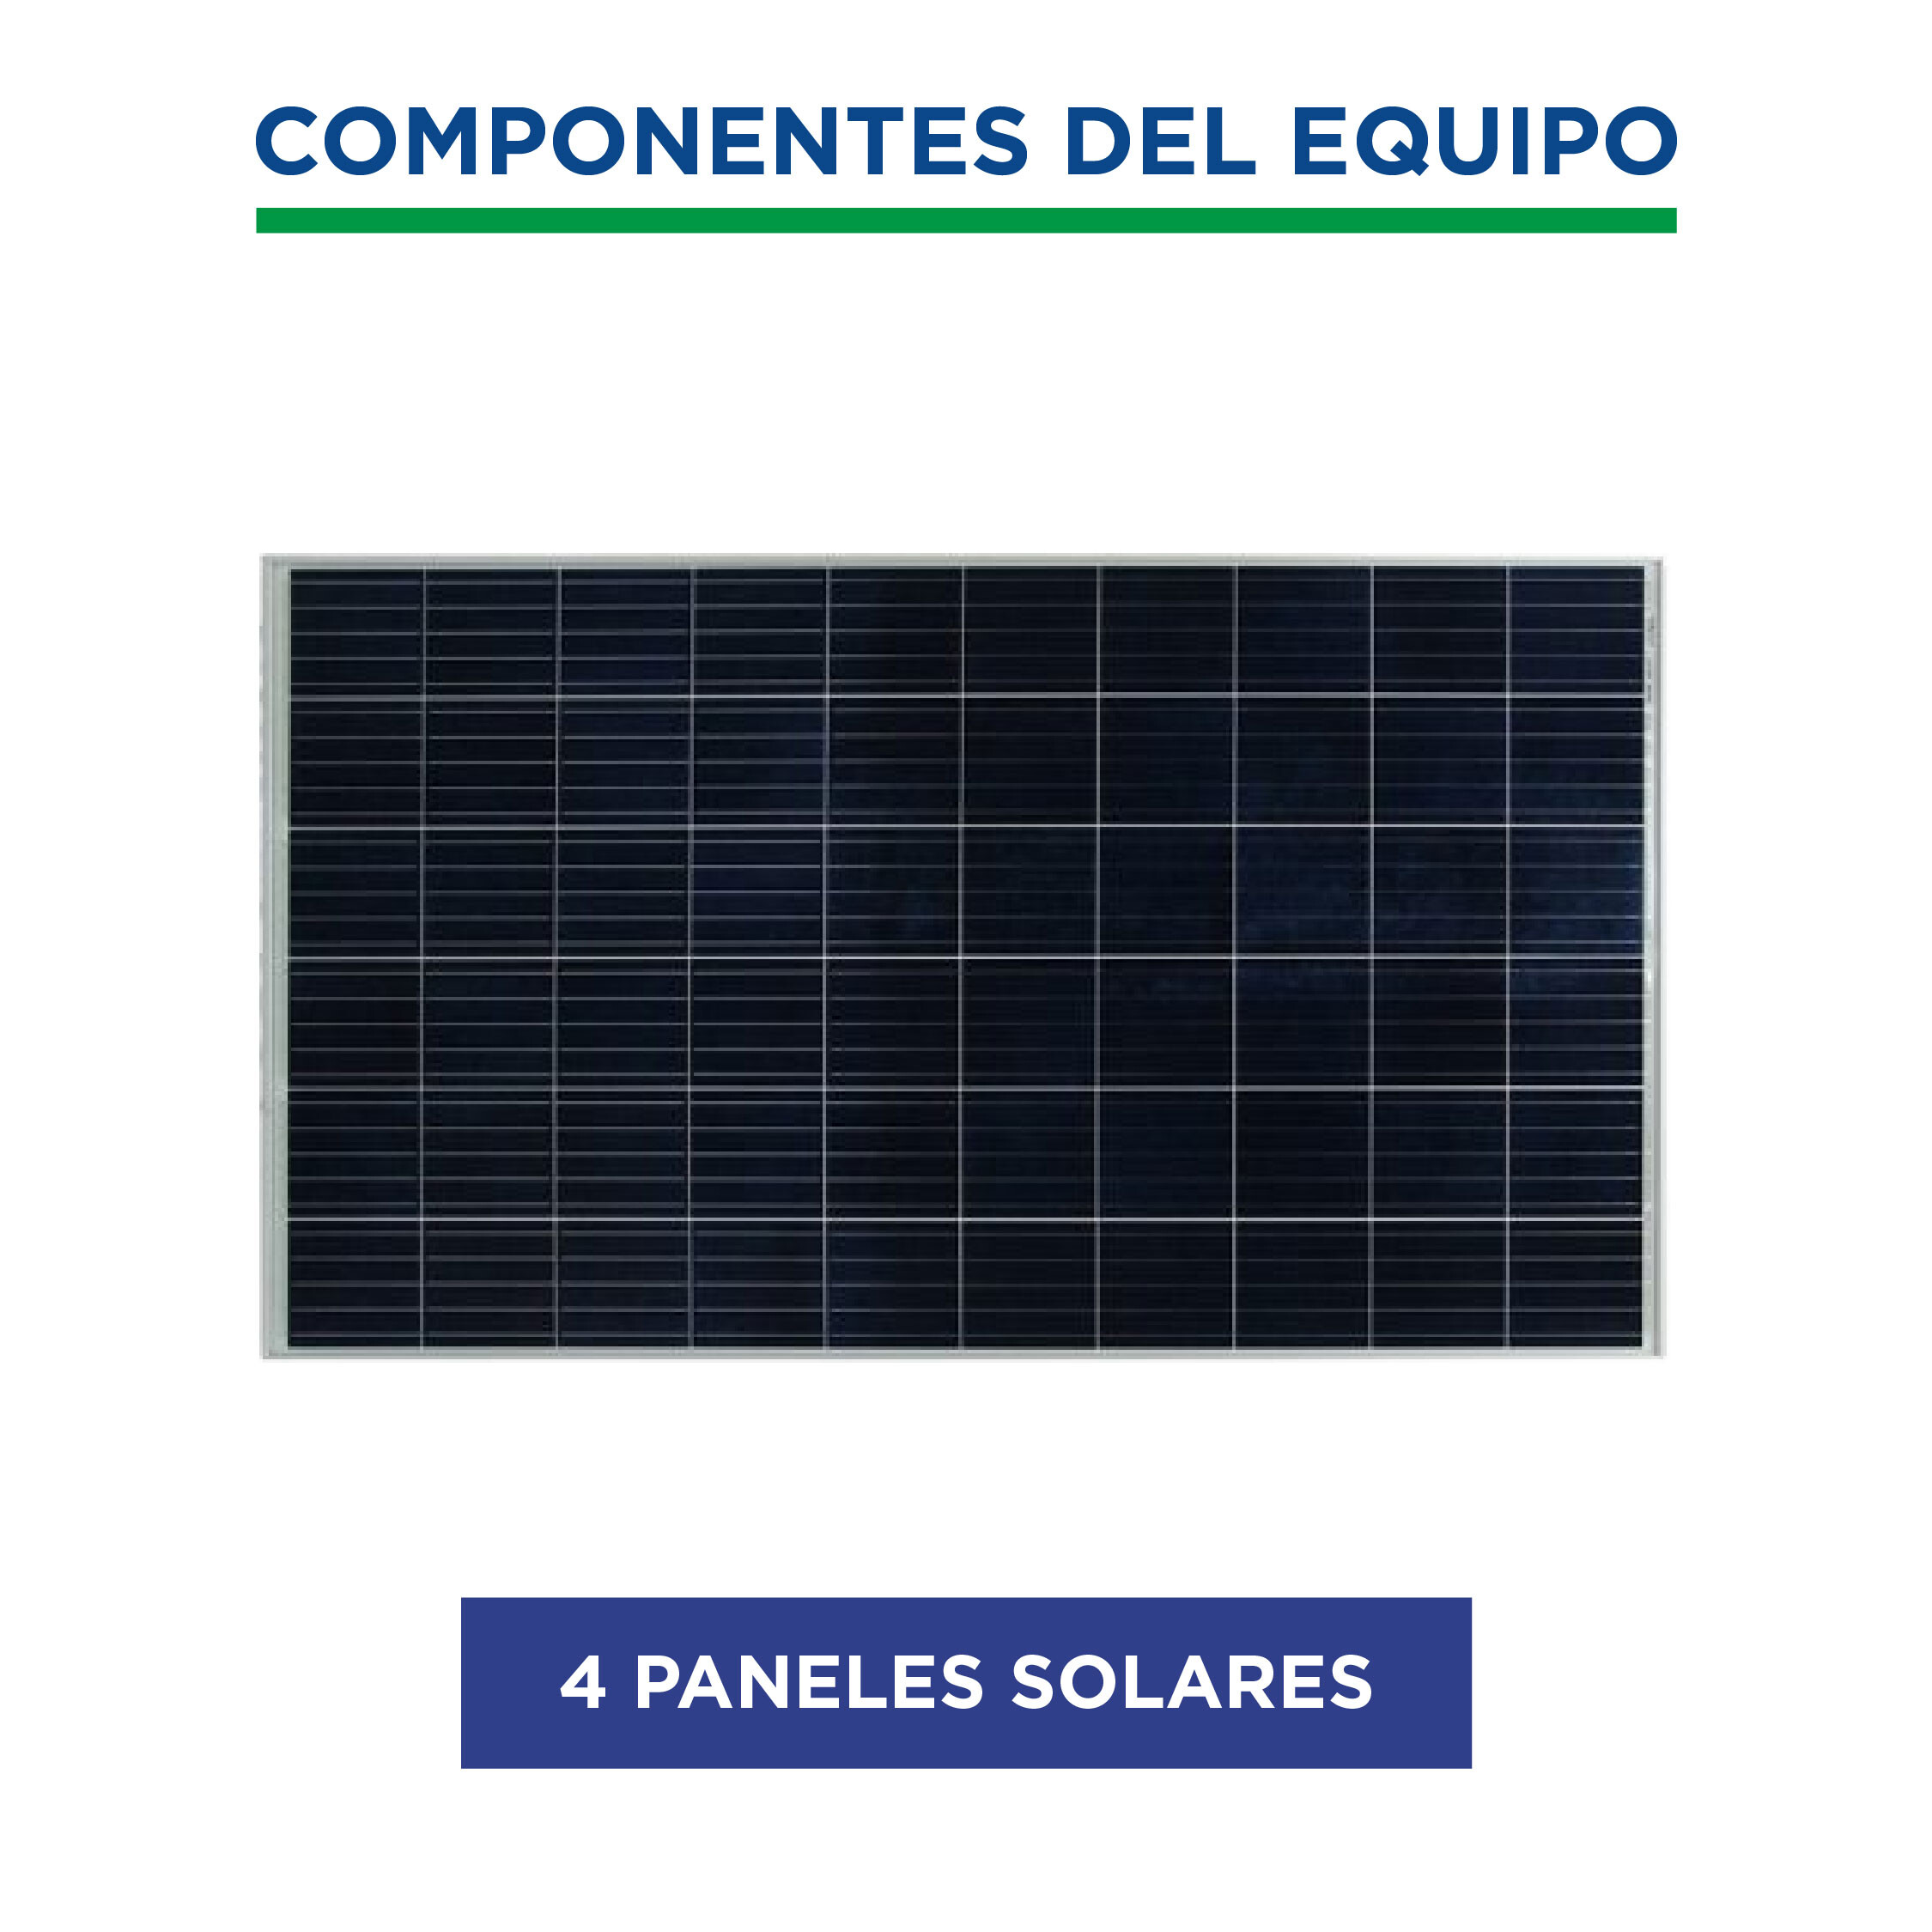 kit solar Generador solar 3k Campo / Ciudad